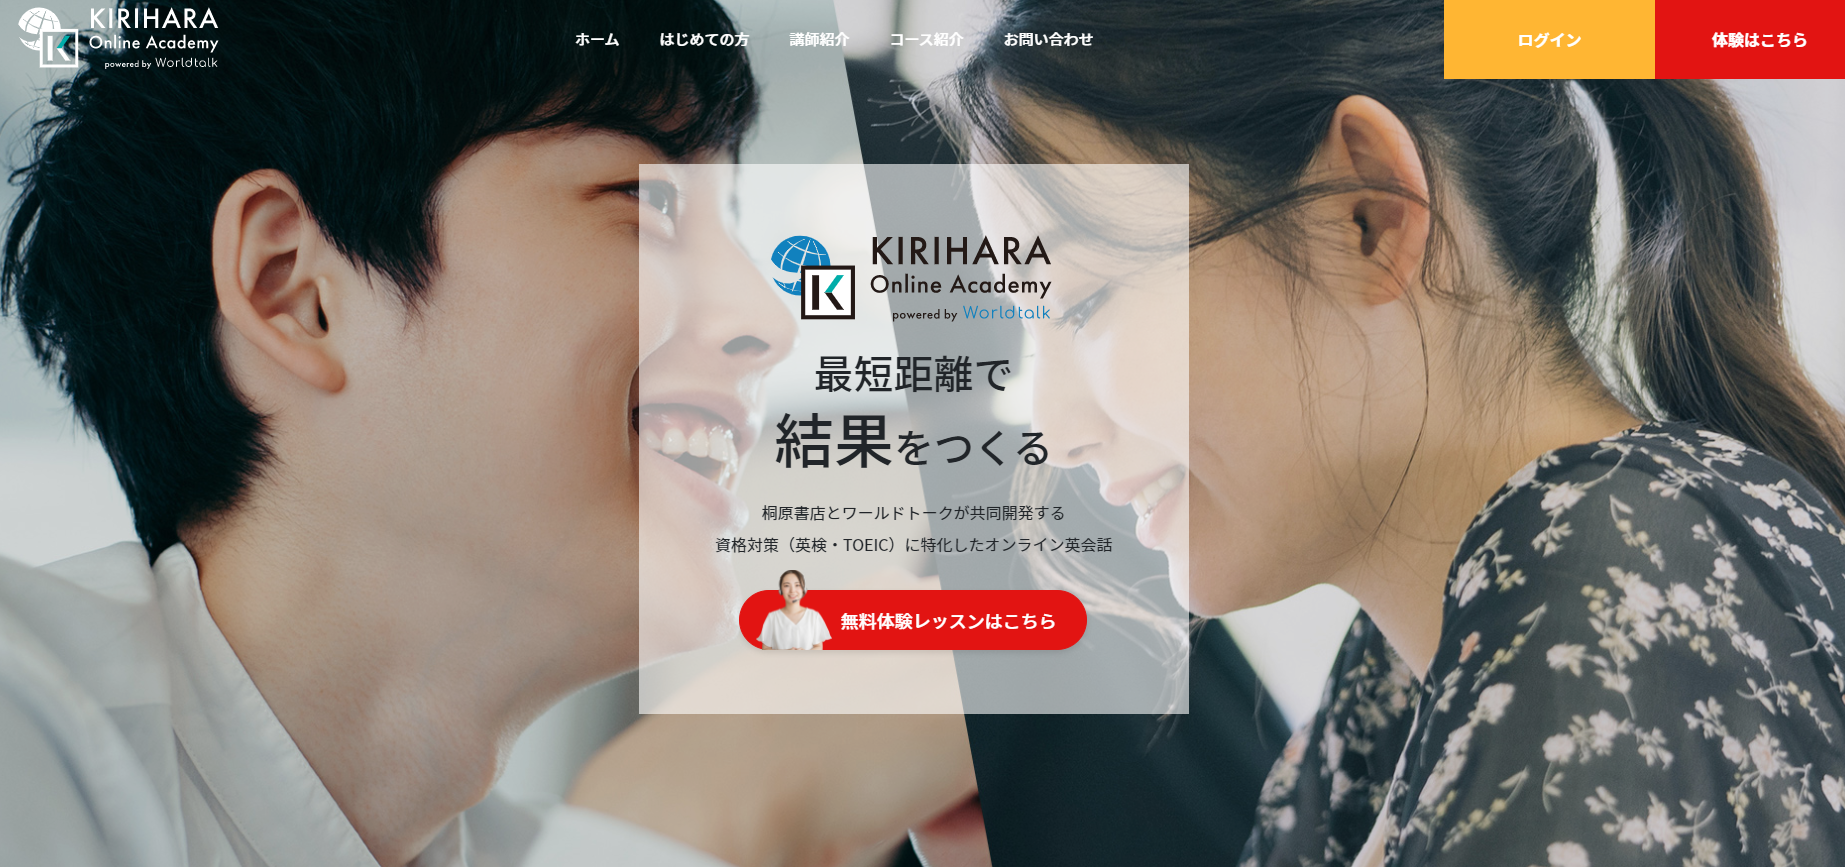 桐原書店がオンライン英語学習サービス「KIRIHARA Online Academy」をリリース